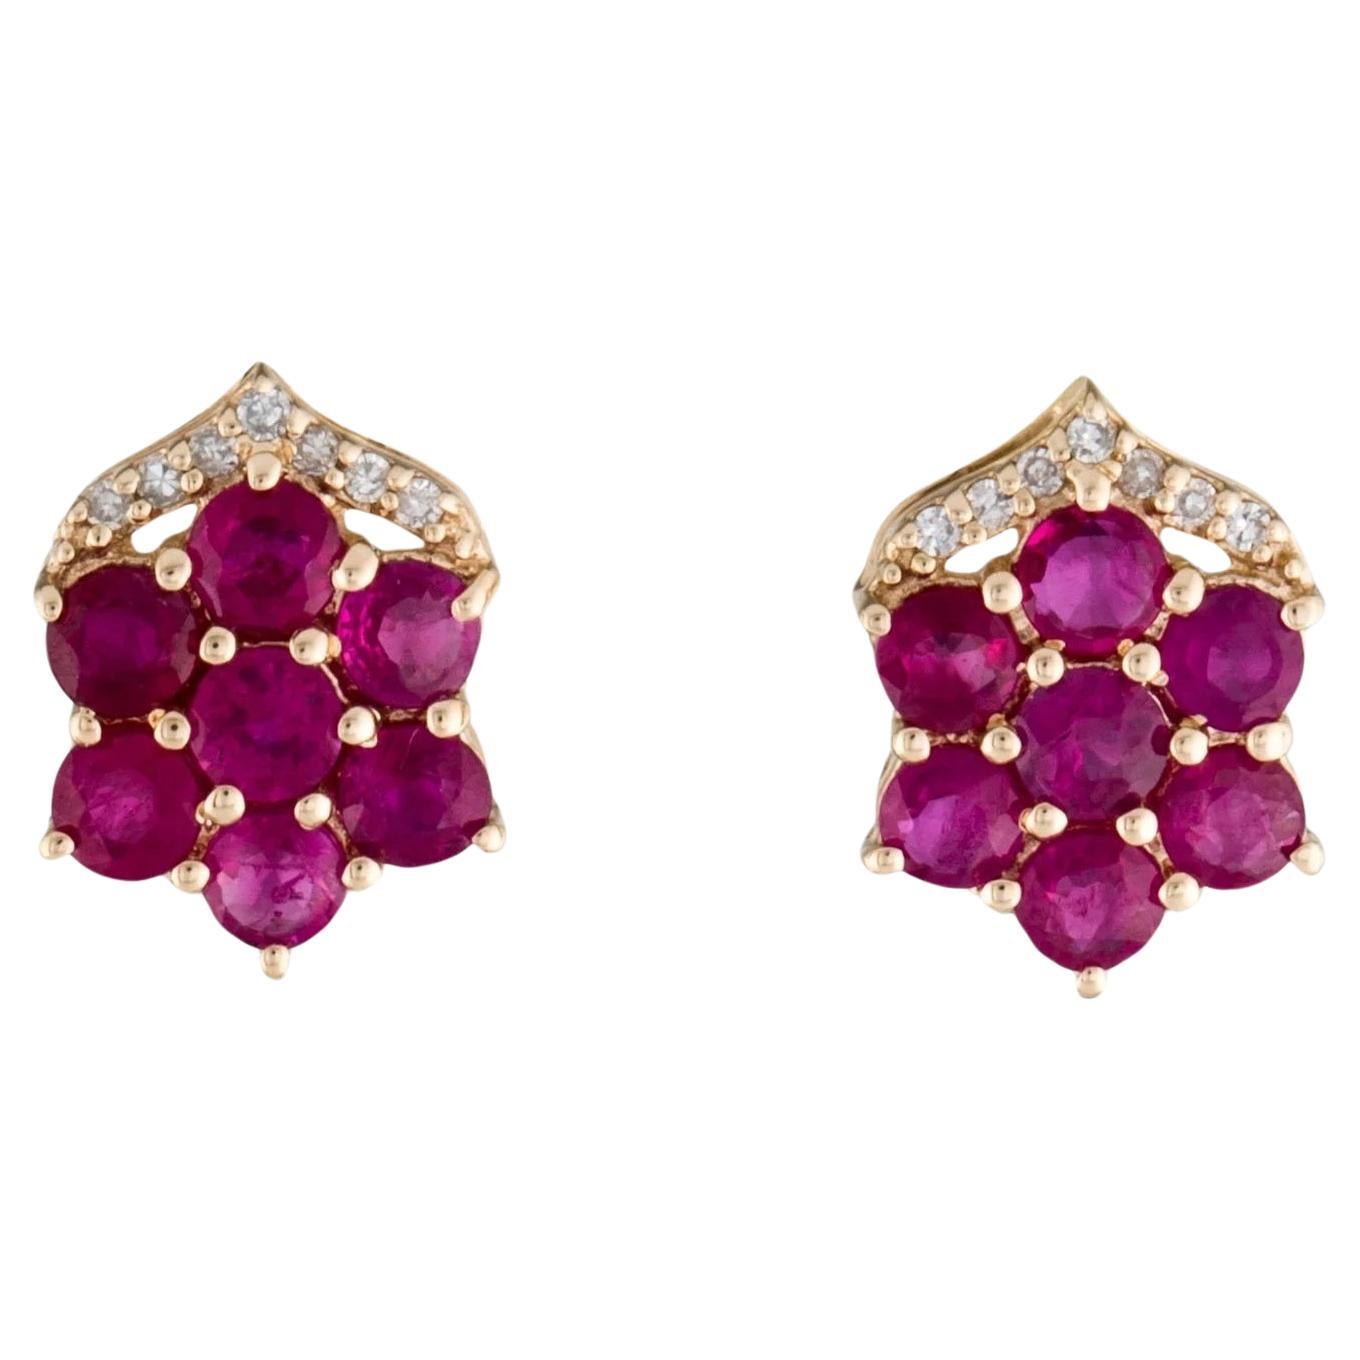  Gut ausgeführte Ohrringe aus 14 Karat Gelbgold mit Rubin und Diamanten